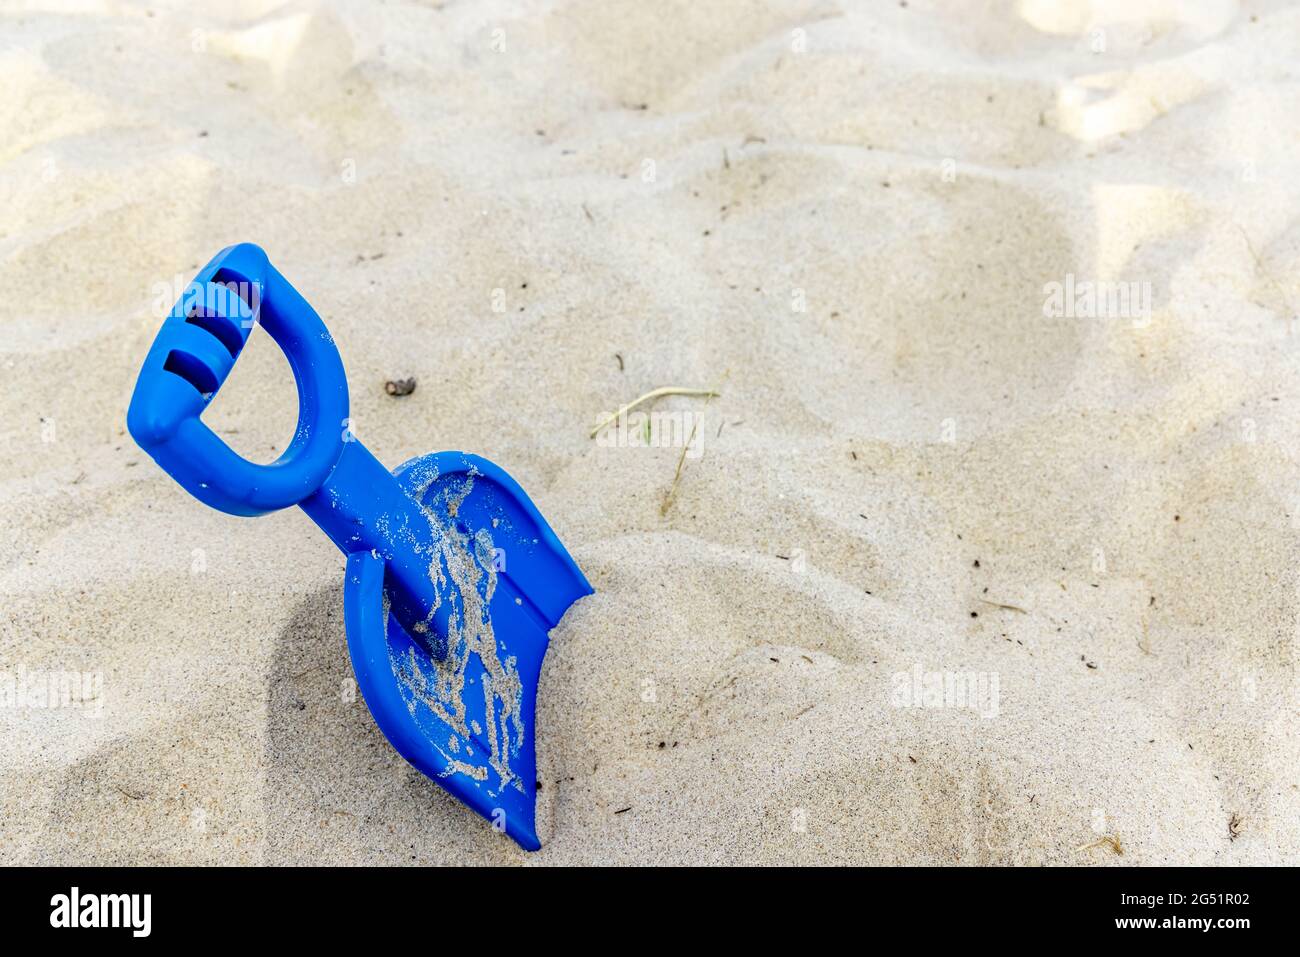 Eine blaue Plastikschaufel für Kinder im Sand Stockfoto